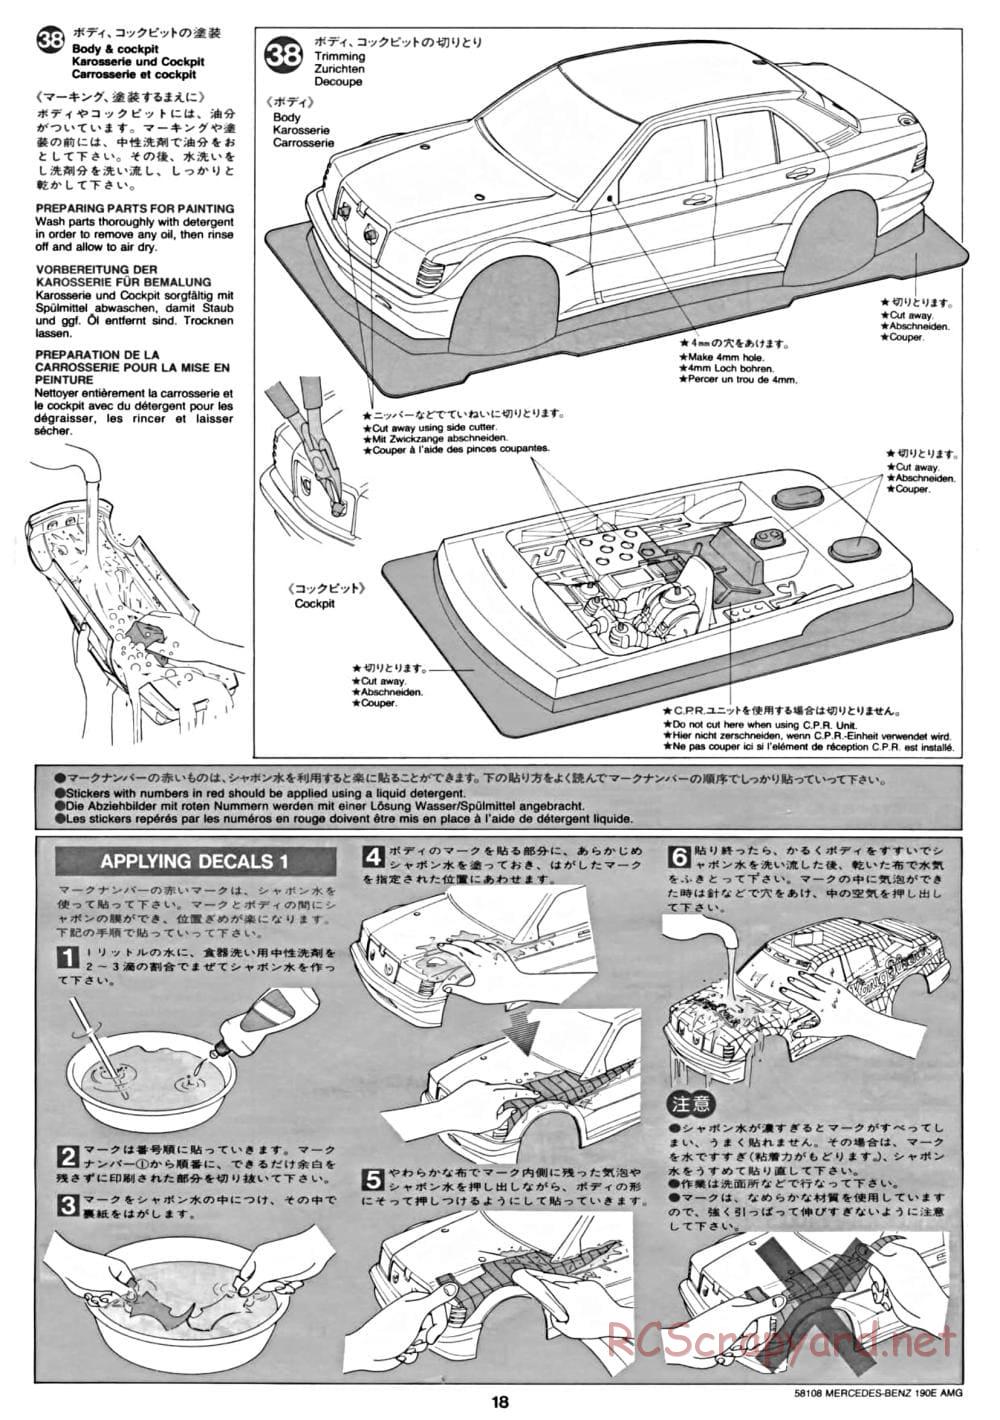 Tamiya - Mercedes Benz 190E Evo.II AMG - TA-01 Chassis - Manual - Page 18